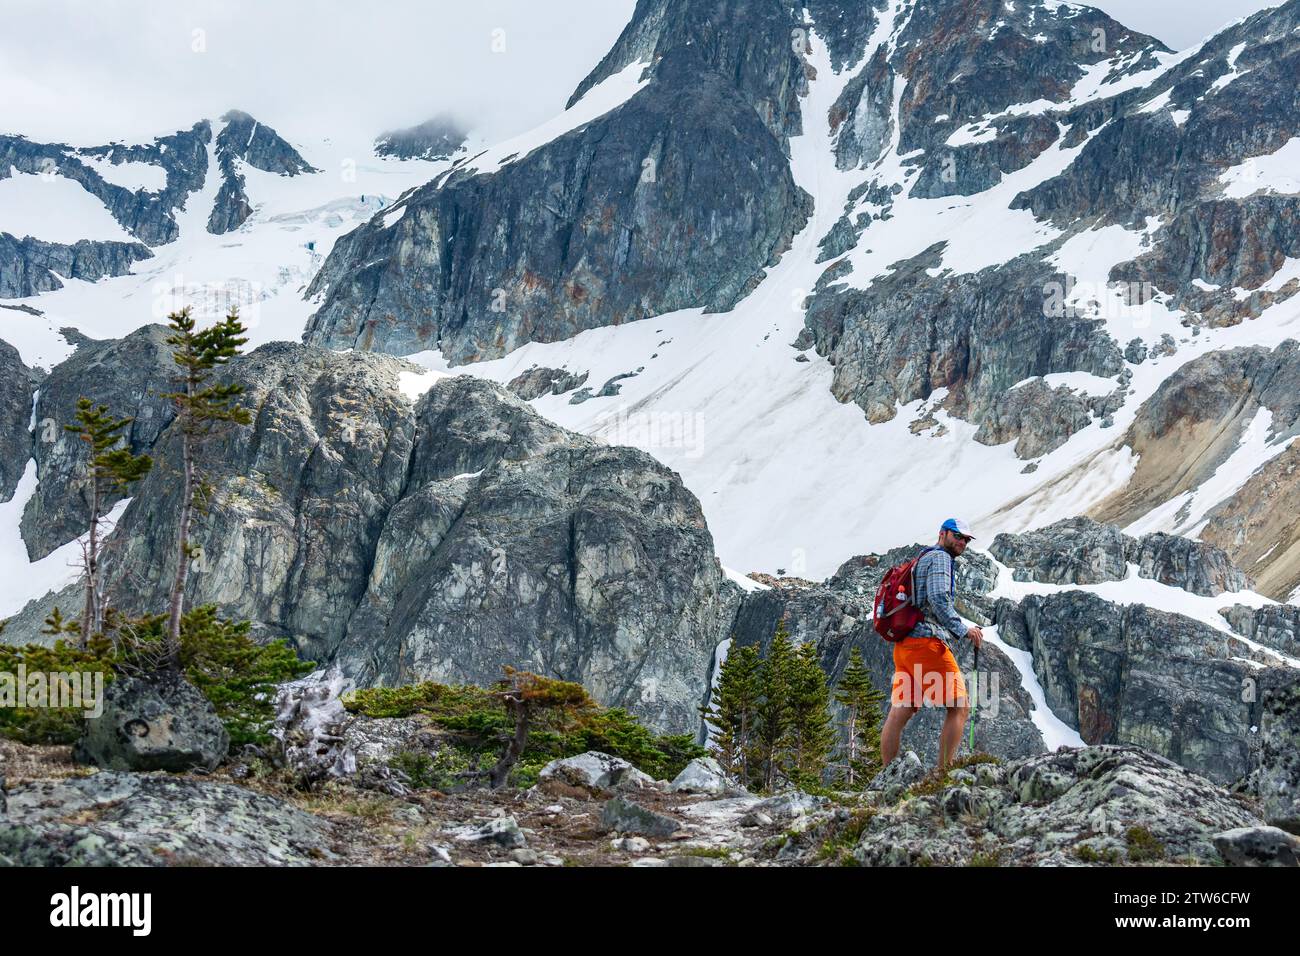 Ein einsamer Wanderer durchquert das zerklüftete alpine Gelände der Kanadischen Rocky Mountains, umgeben von majestätischen schneebedeckten Gipfeln. Stockfoto